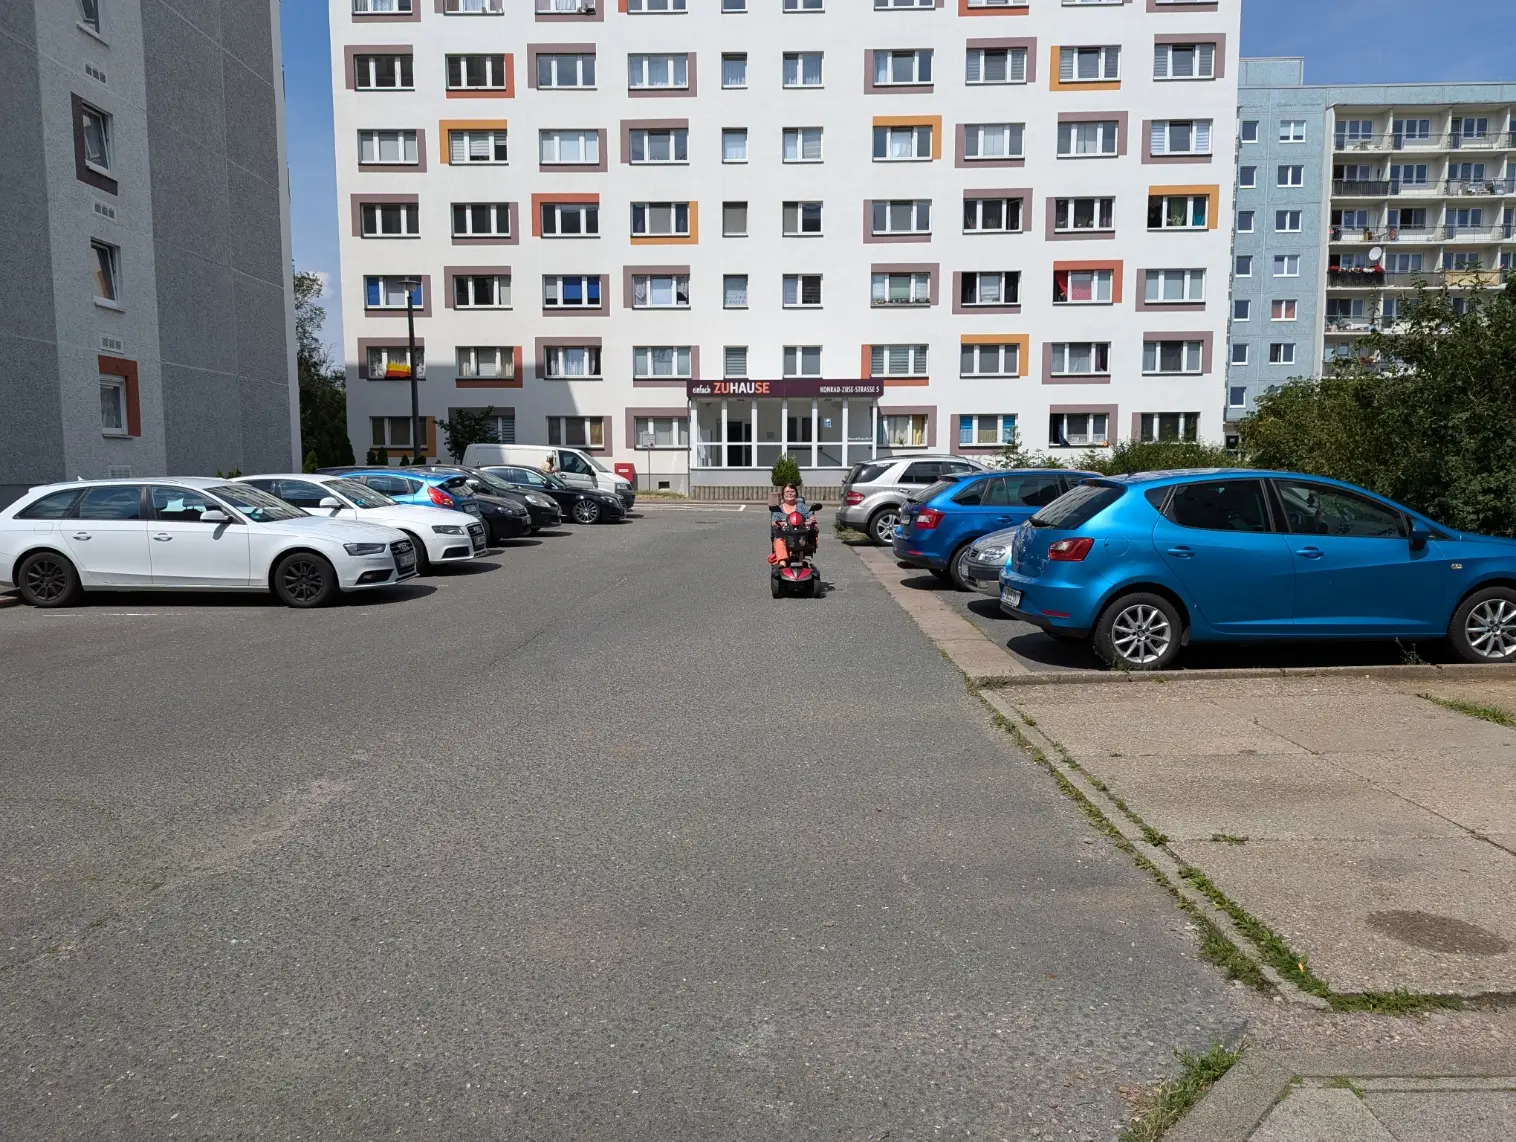 Zu sehen ist die Konrad-Zuse-Straße 5 mit parkenden Autos und einem Senioren-Mobil auf der Straße.